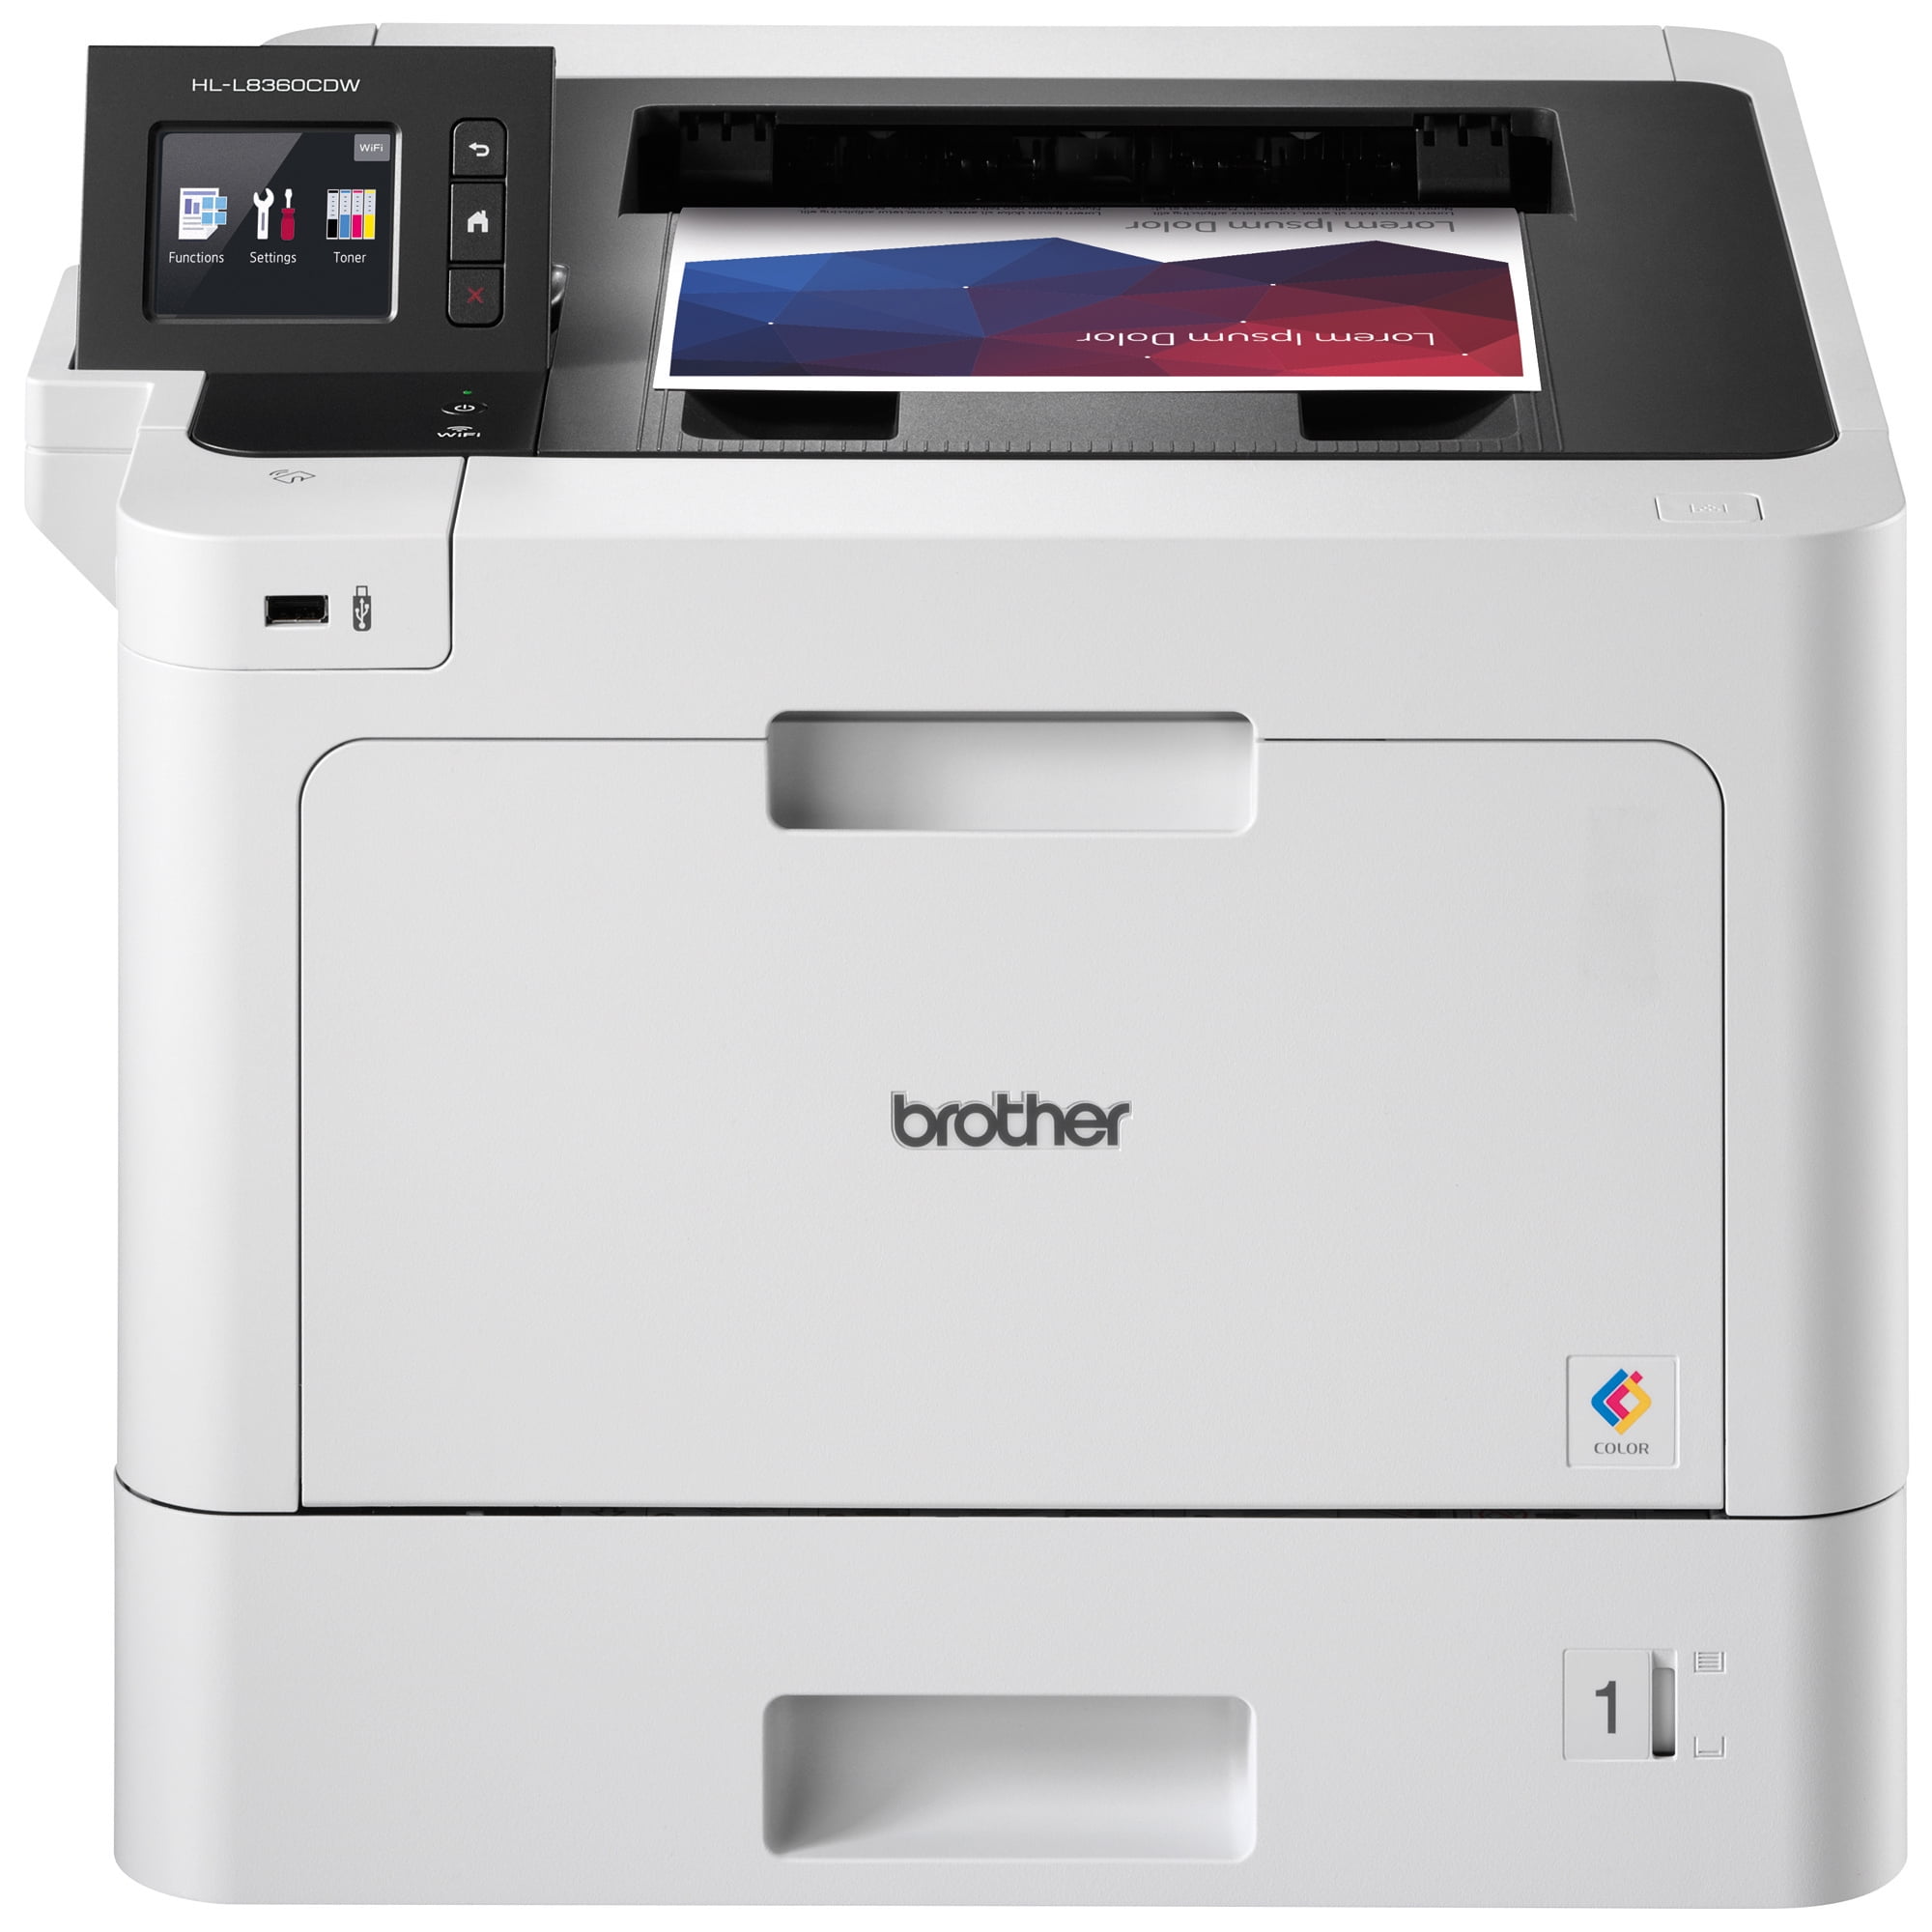 HP LaserJet M209dwe Printer w/ bonus 6 months Instant Ink toner